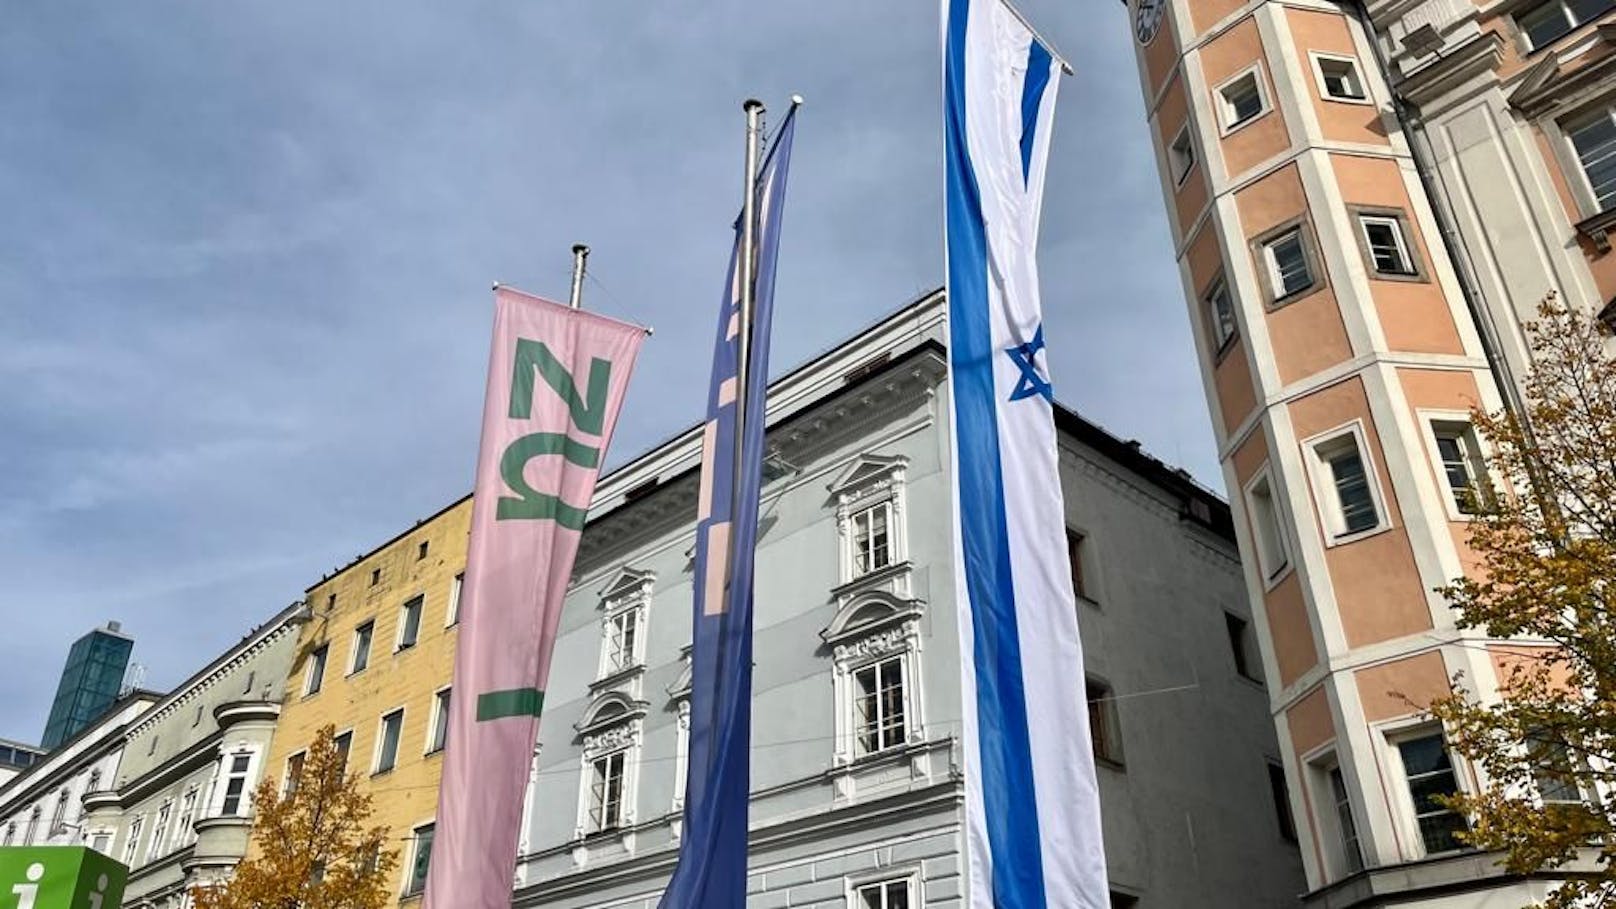 Jüdische Einrichtungen in Linz nun unter Polizeischutz